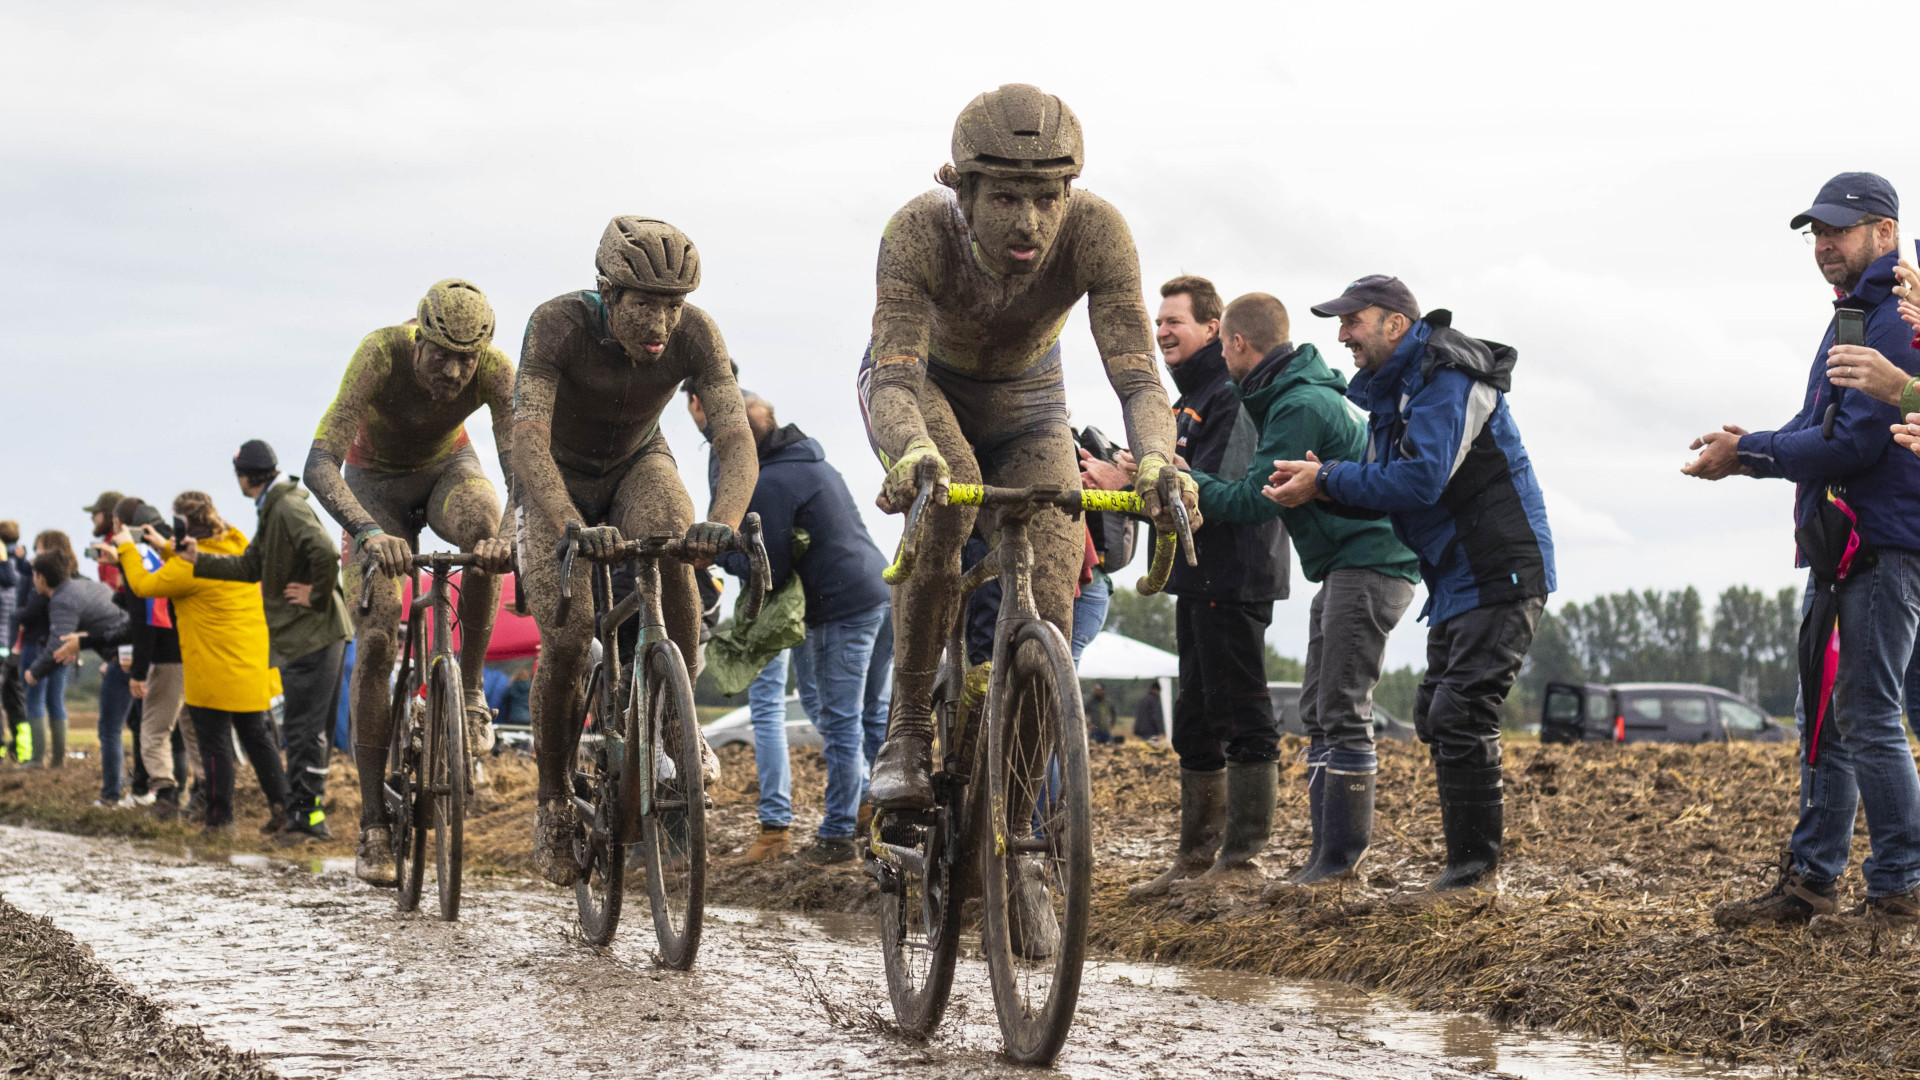 Comment regarder en direct la course Paris-Roubaix 2022 ? TechRadar